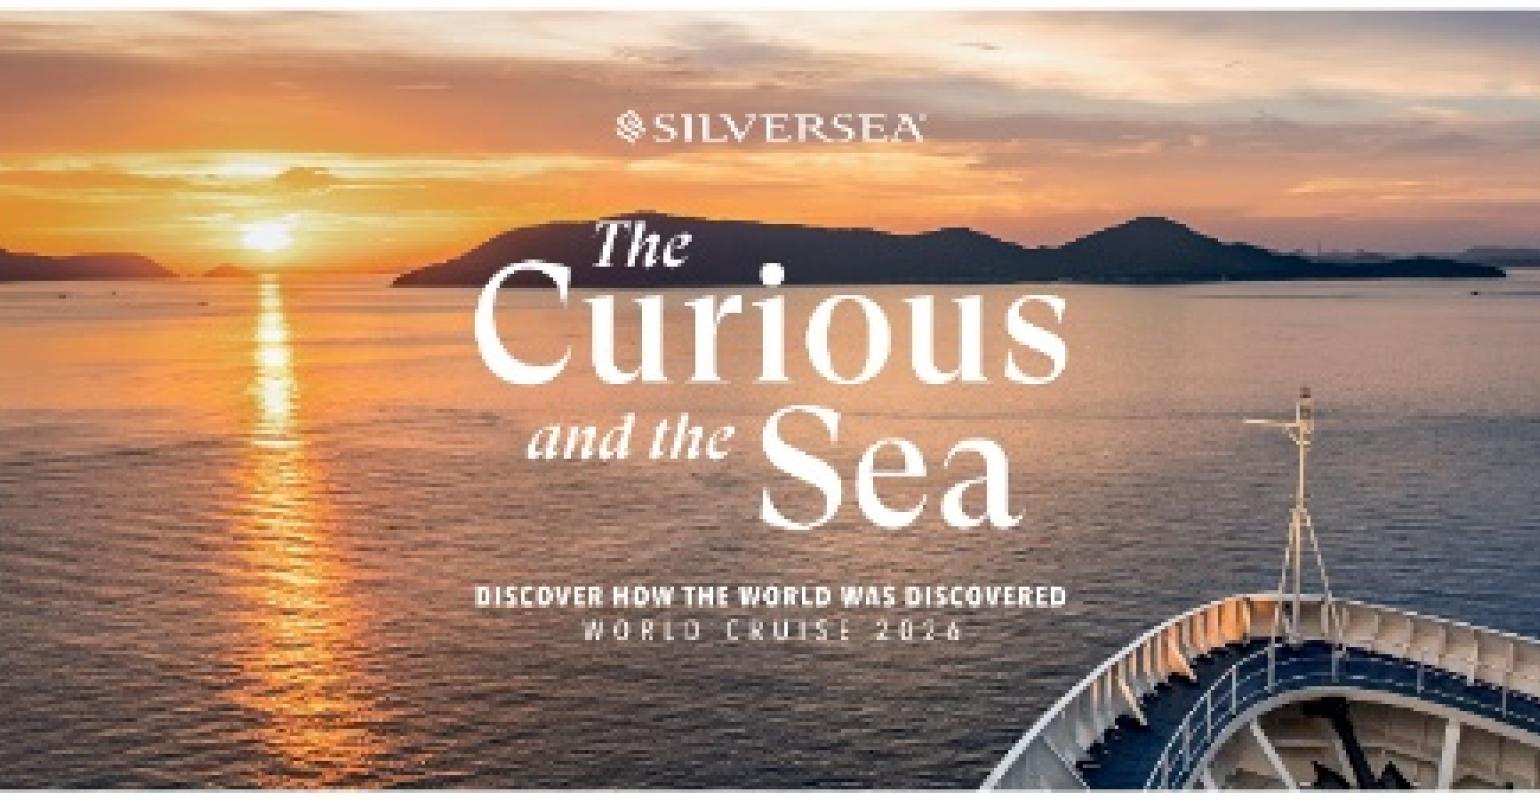 silversea world cruise 2026 itinerary